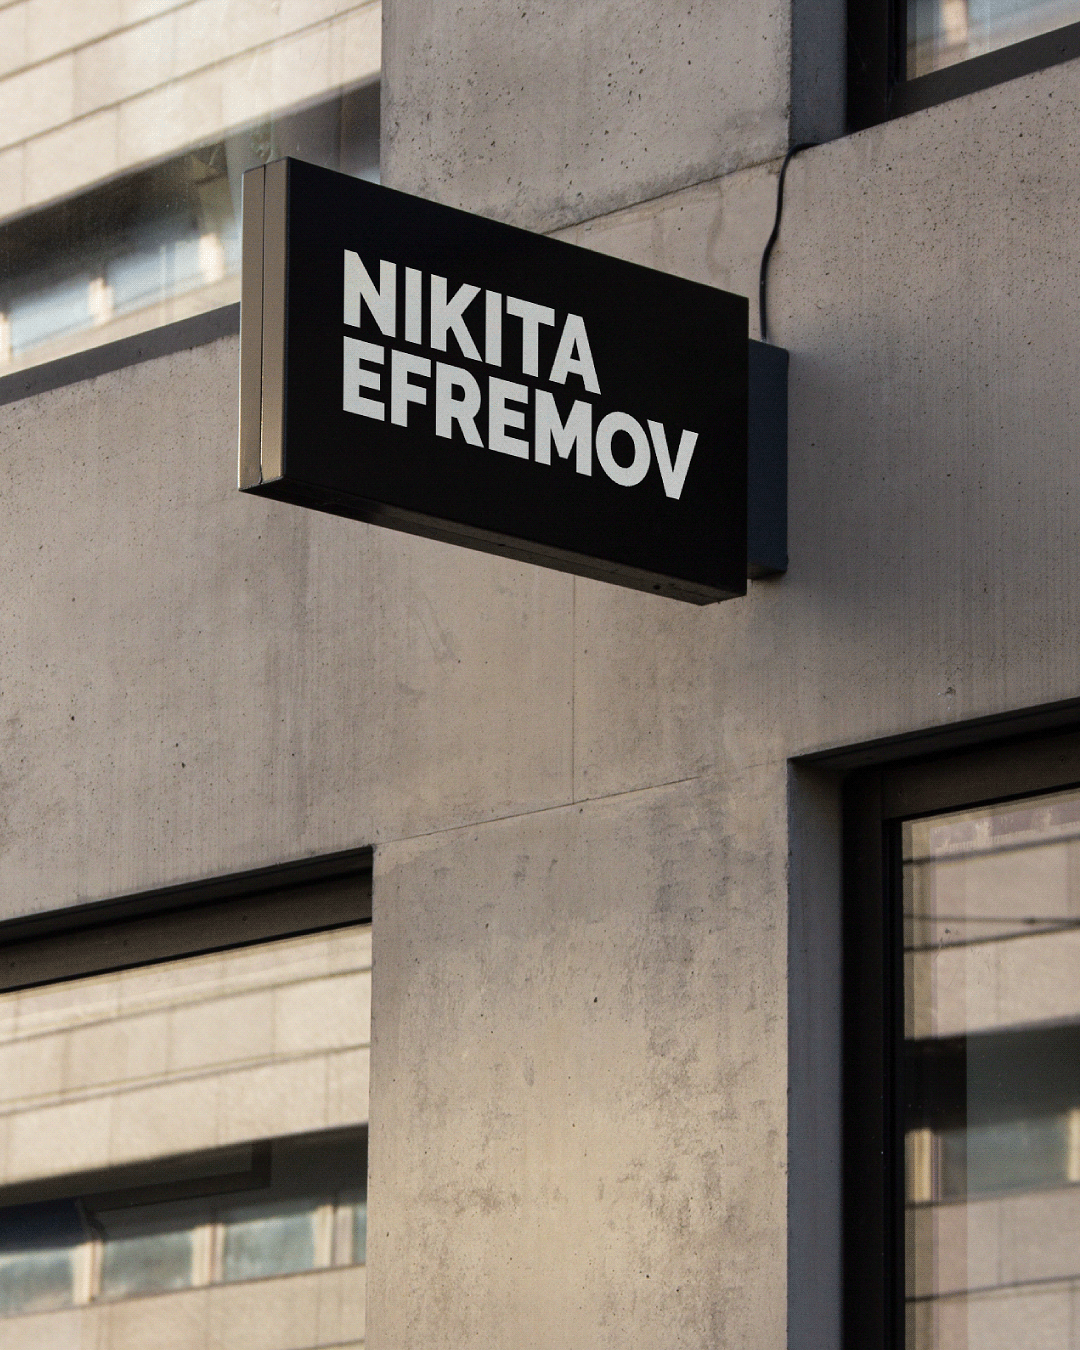 Nikita Efremov运动鞋店品牌视觉设计